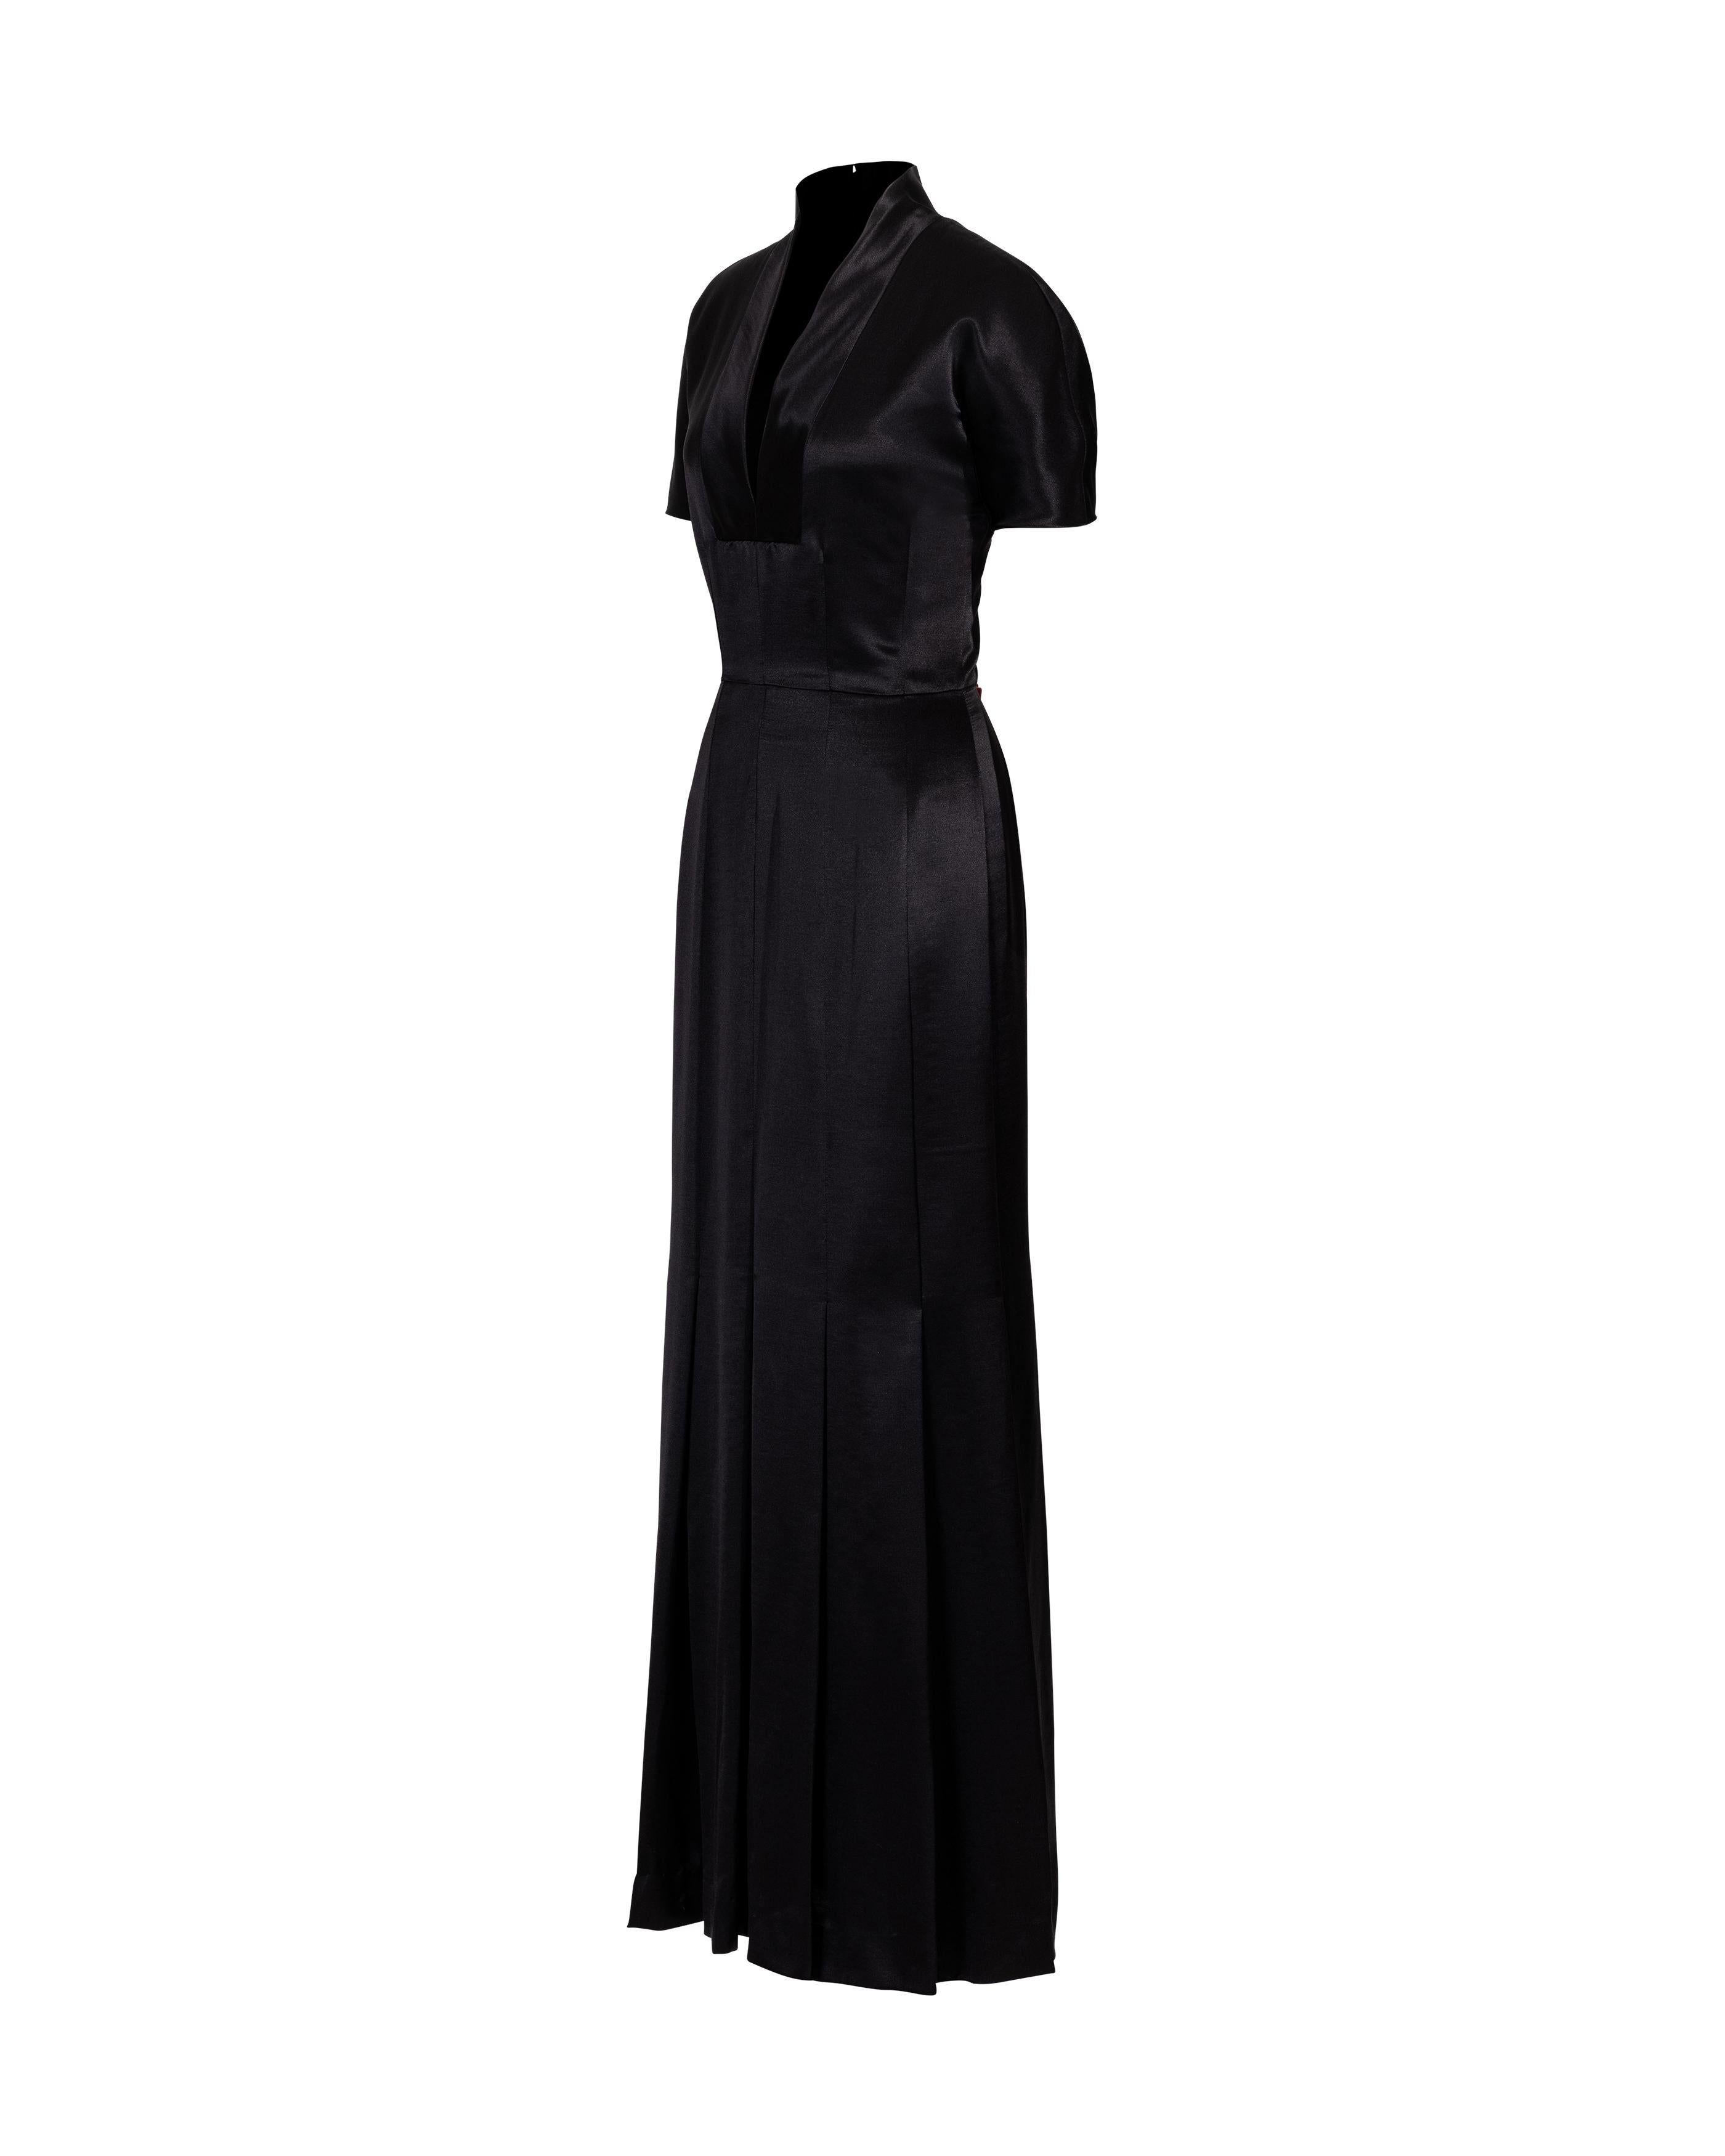 Robe noire plissée à manches courtes Givenchy by Alexander McQueen des années 1990. Robe à manches courtes, col en V, avec taille ajustée et jupe ample et plissée. Fermeture à glissière dissimulée au centre du dos. Contenu du tissu : 60% laine, 40%